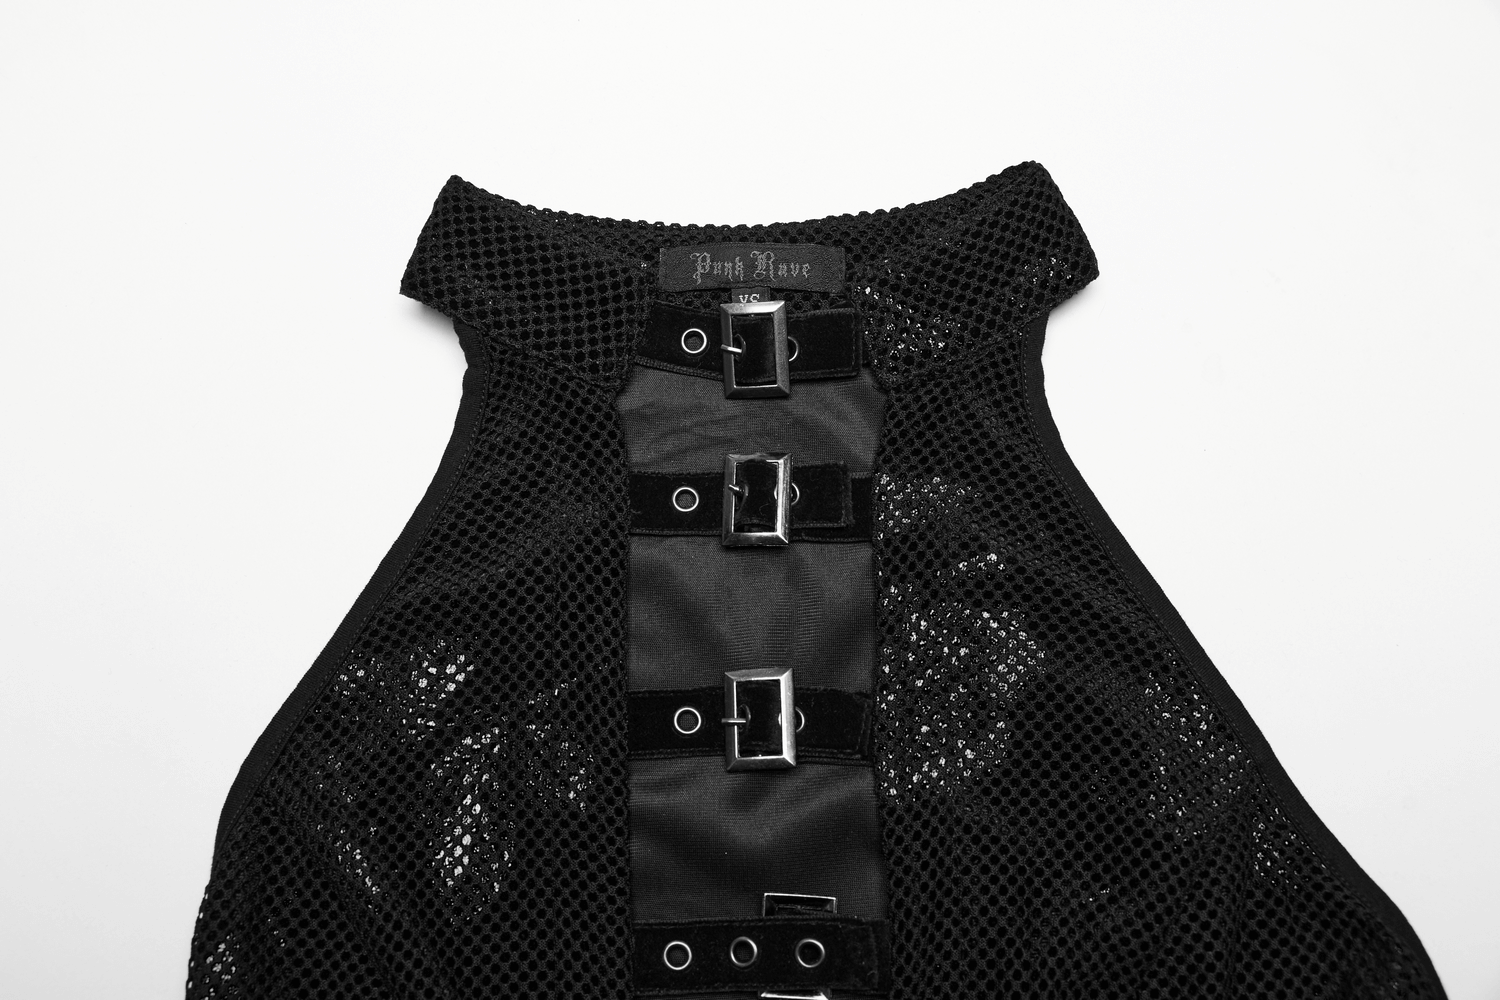 Enchanting Black Gothic Velvet Rose Print Halter Dress